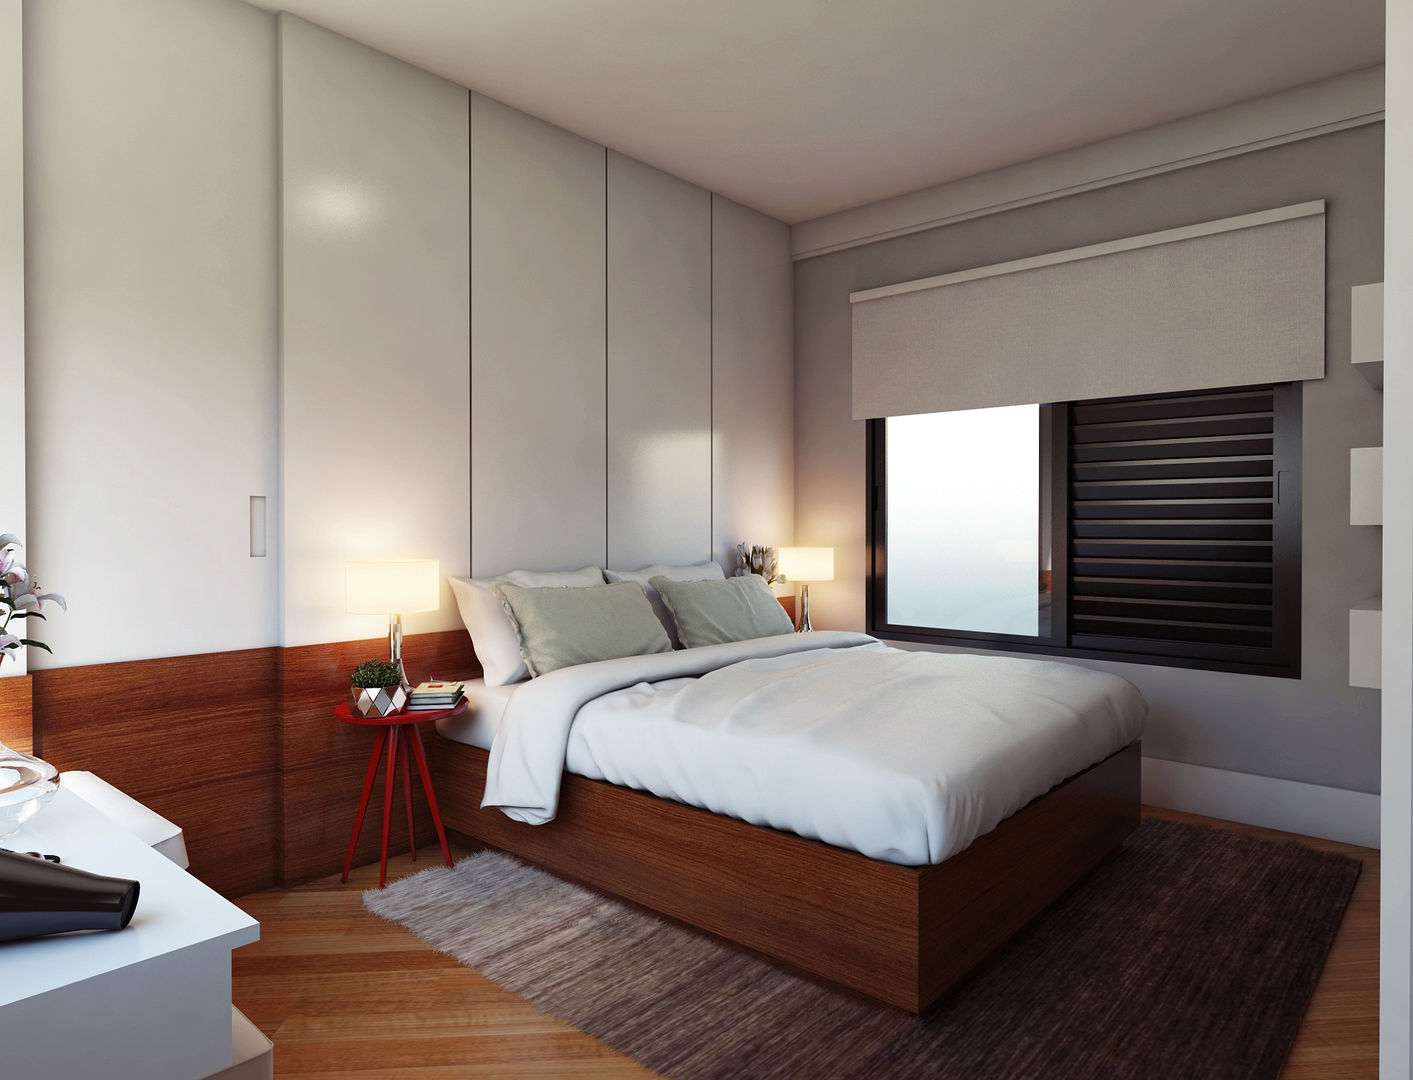 Projeto Residencial I , Lozí - Projeto e Obra Lozí - Projeto e Obra Minimalist bedroom